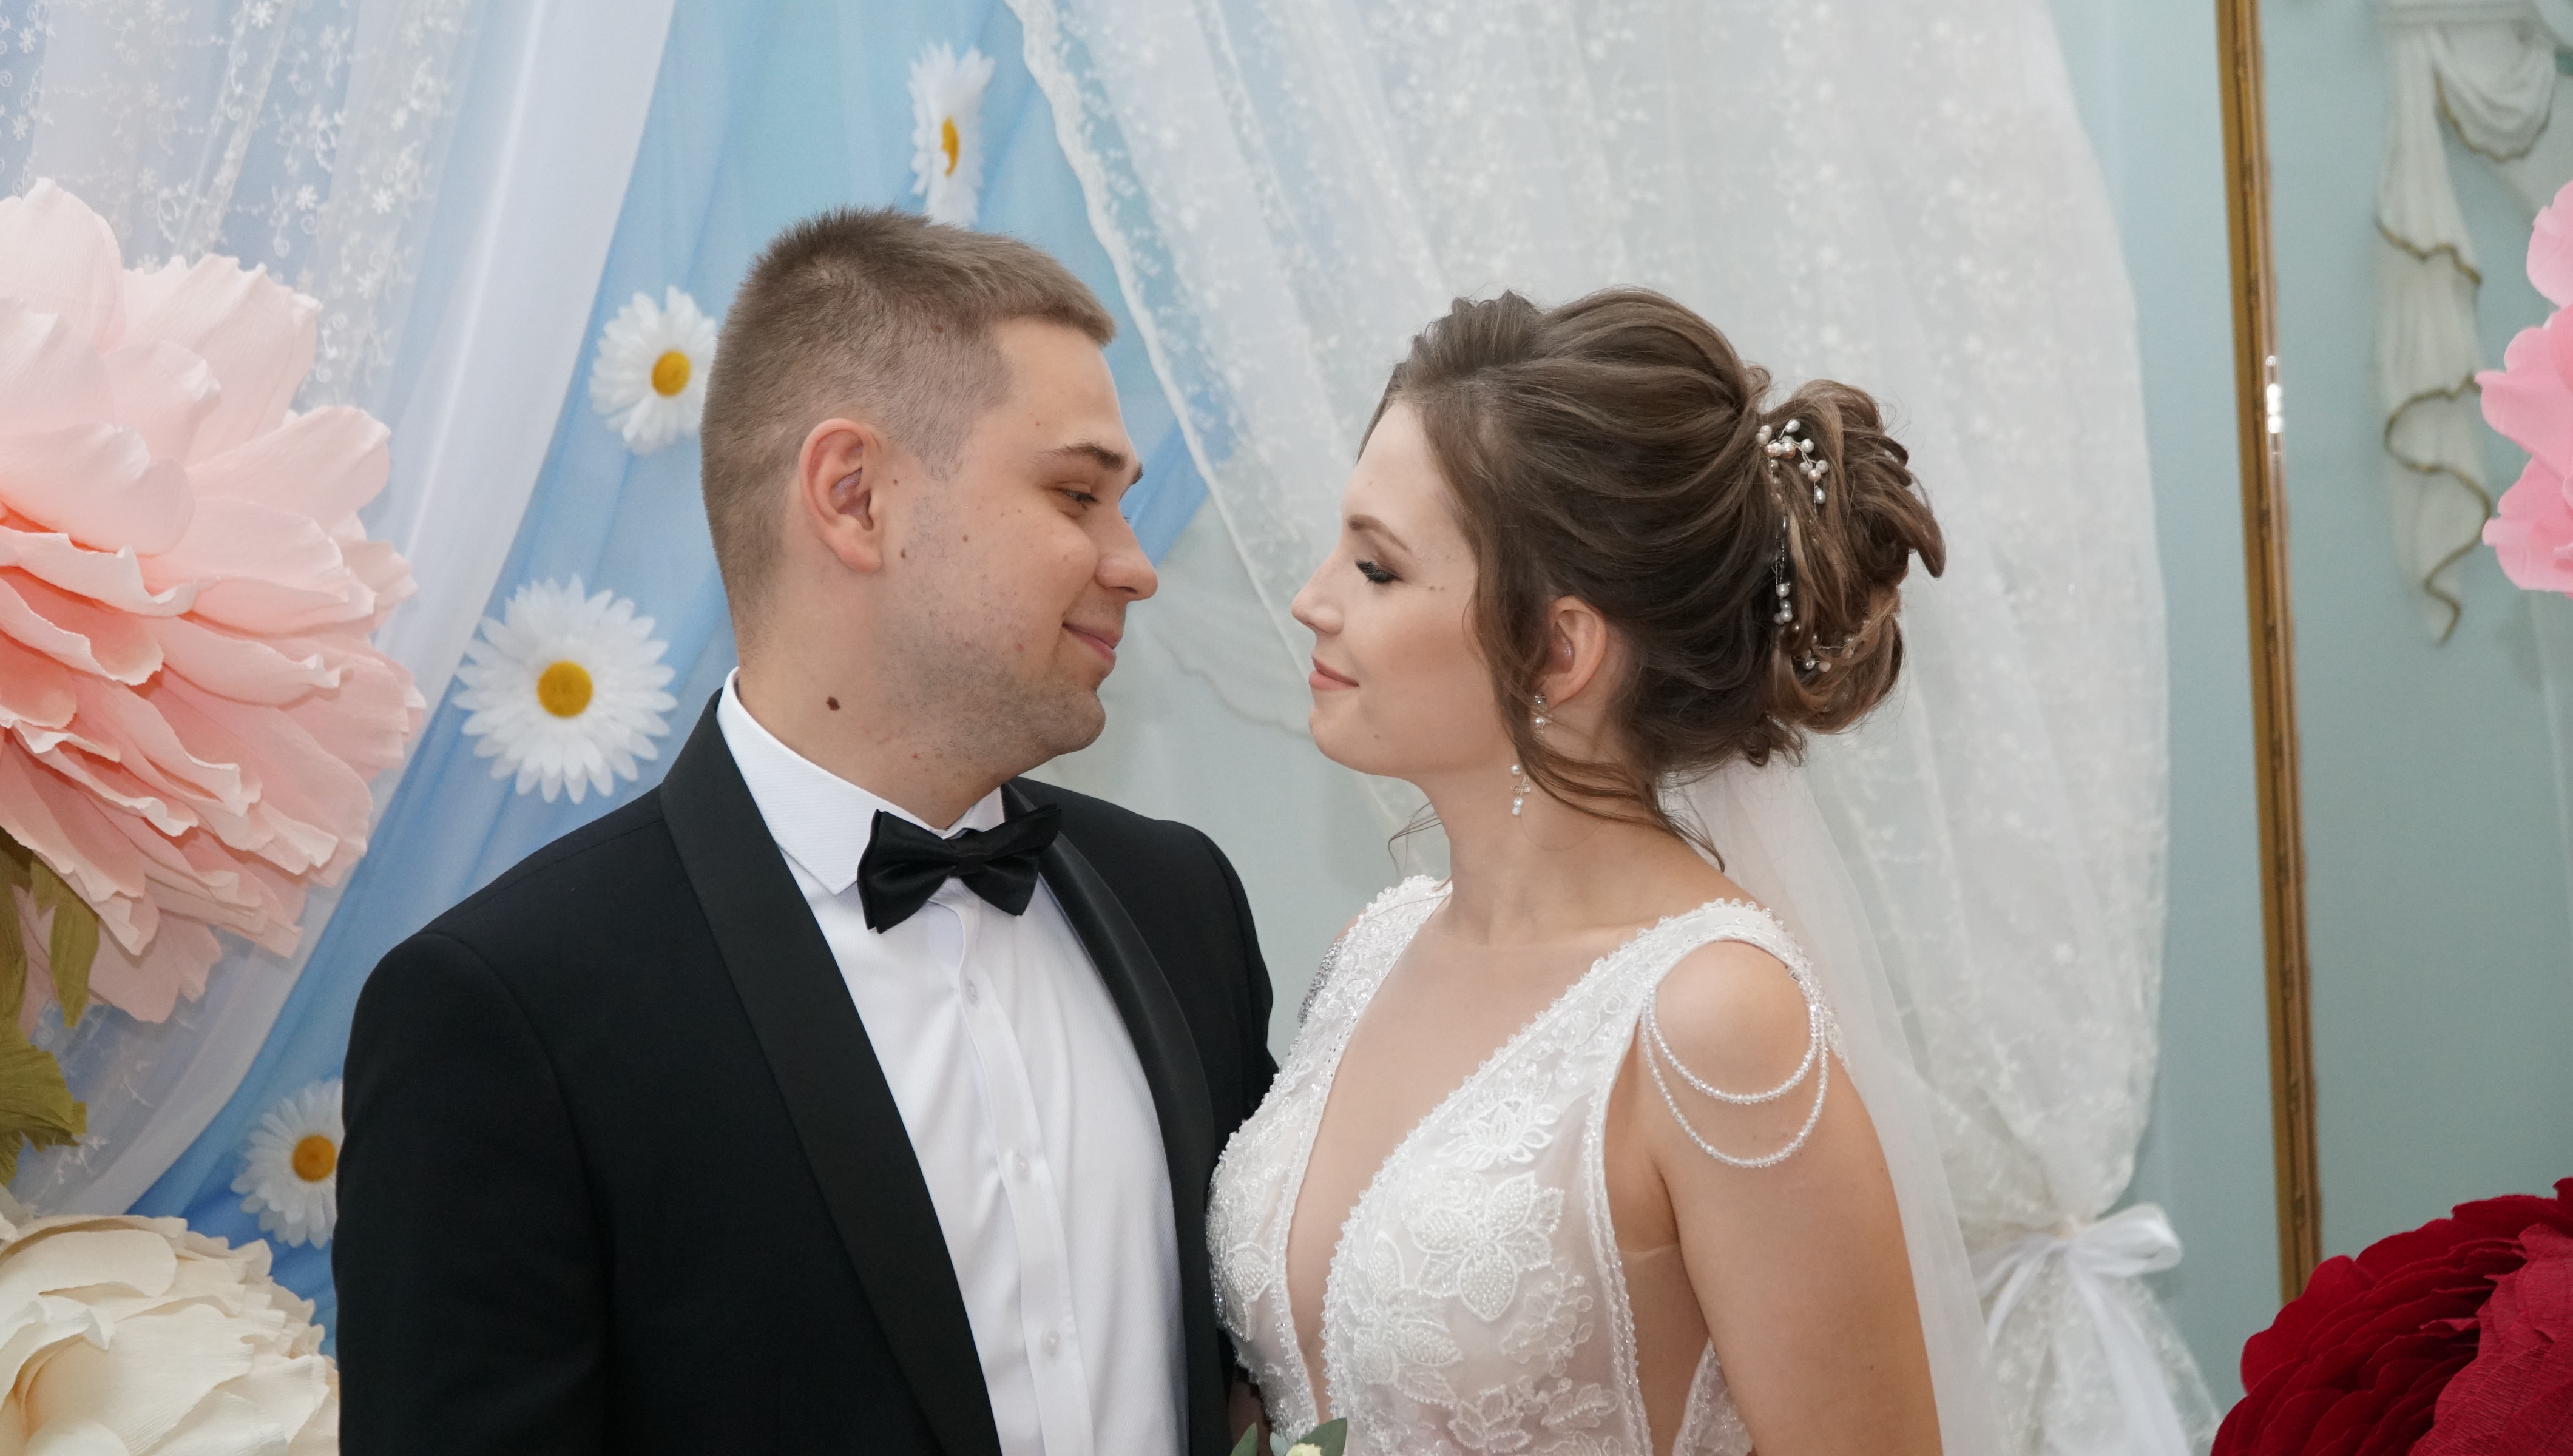 4 свадьбы астрахань. Свадьба в Астрахани 2013 год 14 сентября. Пары которые поженились в 13 и 15.